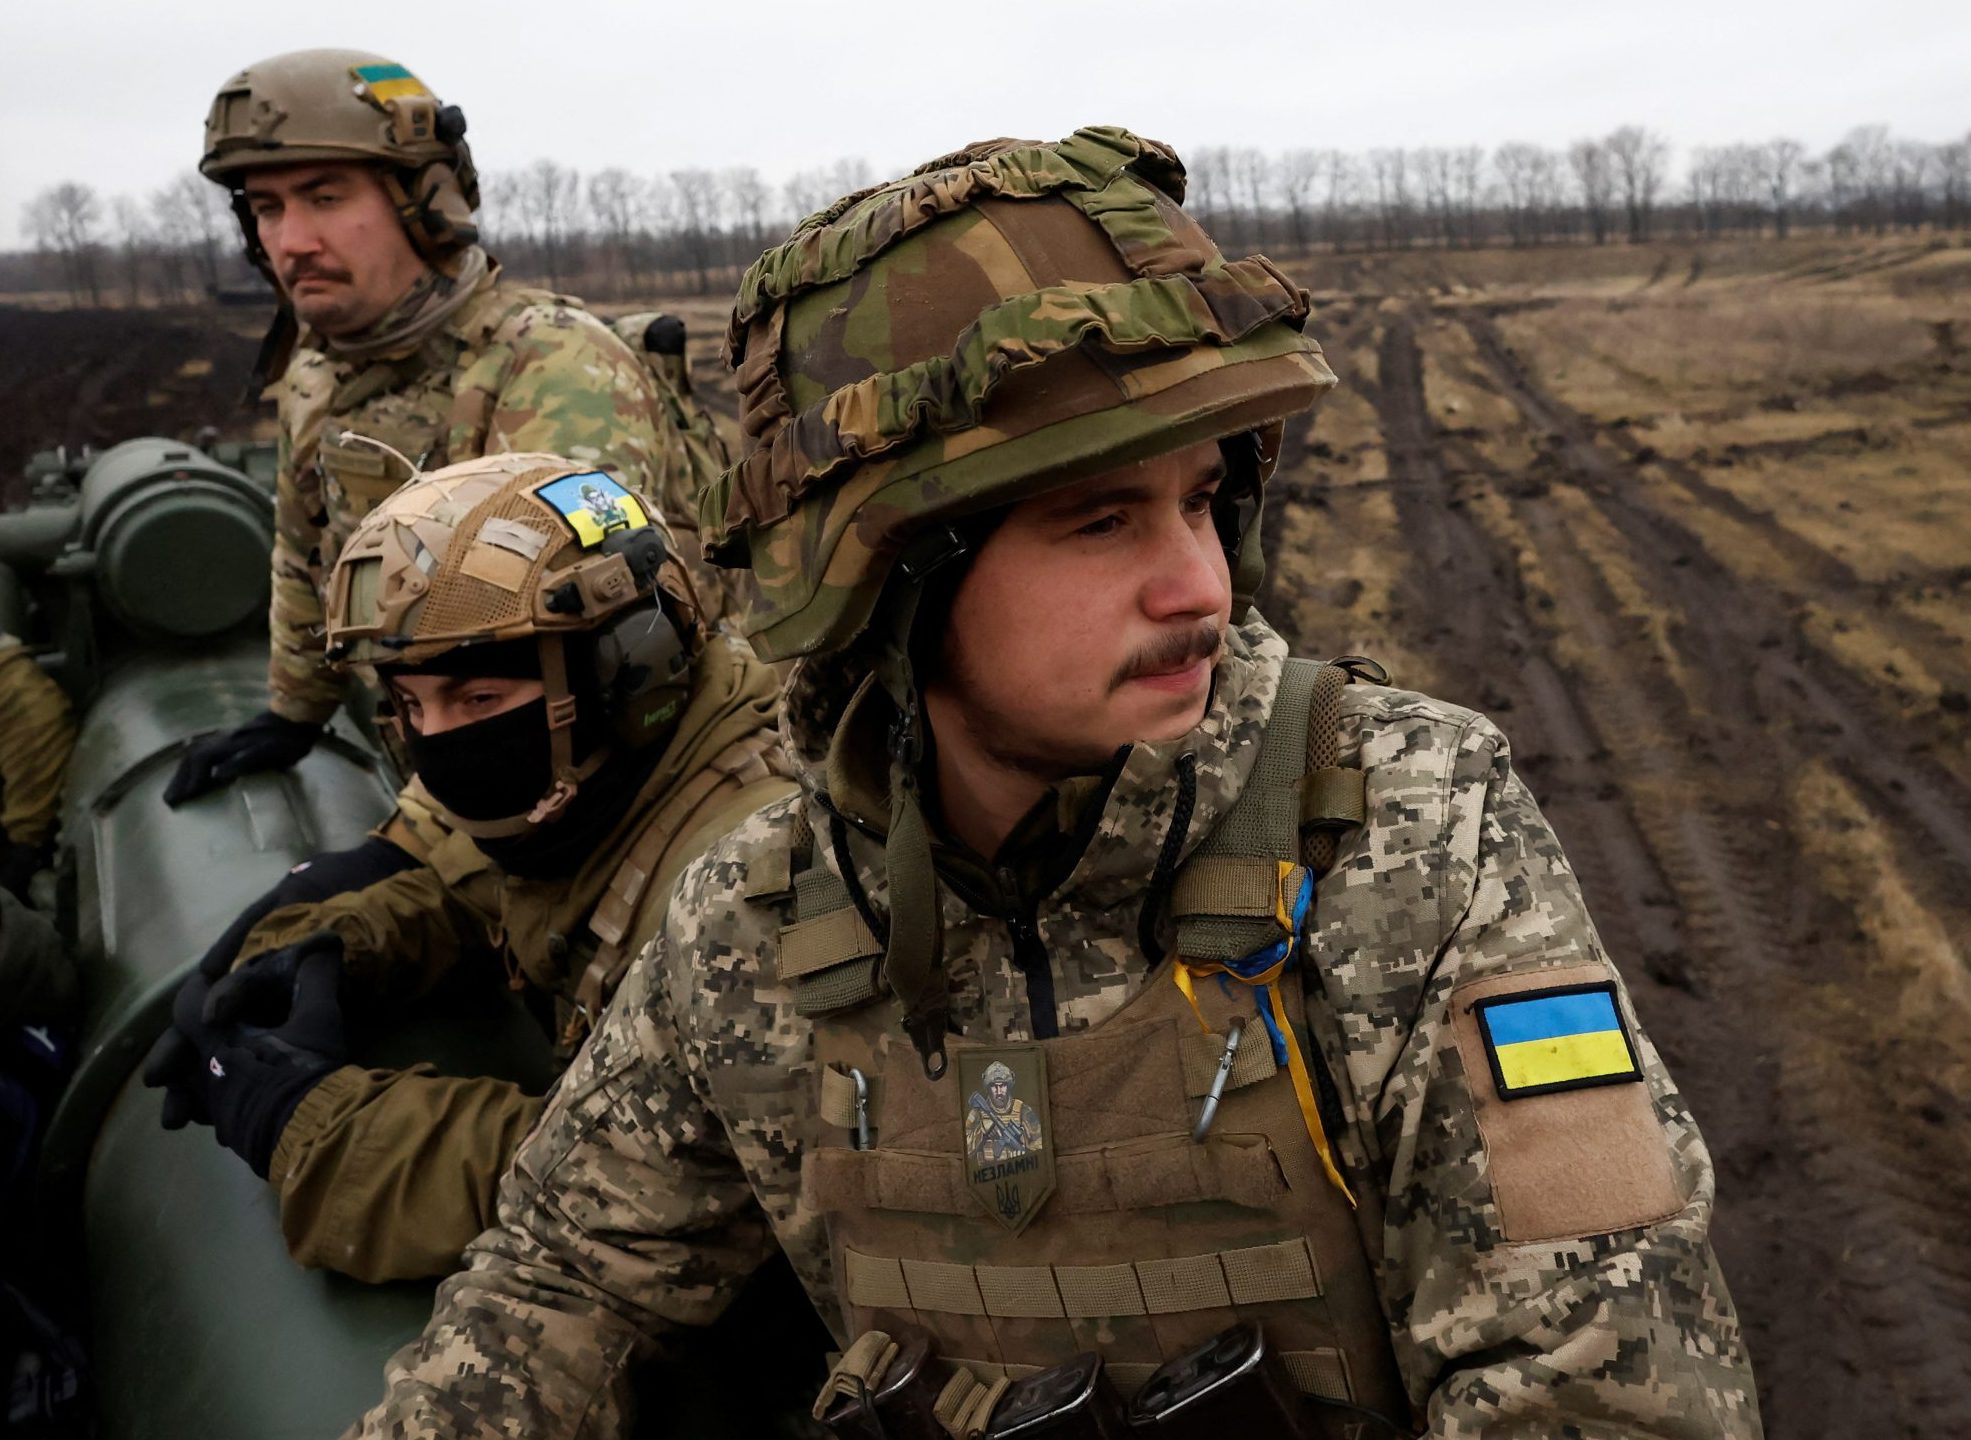 Αποχωρούν οι Ουκρανοί από το Μπακχμούτ; – Ανοικτό διάδρομο έχουν αφήσει οι ρωσικές δυνάμεις